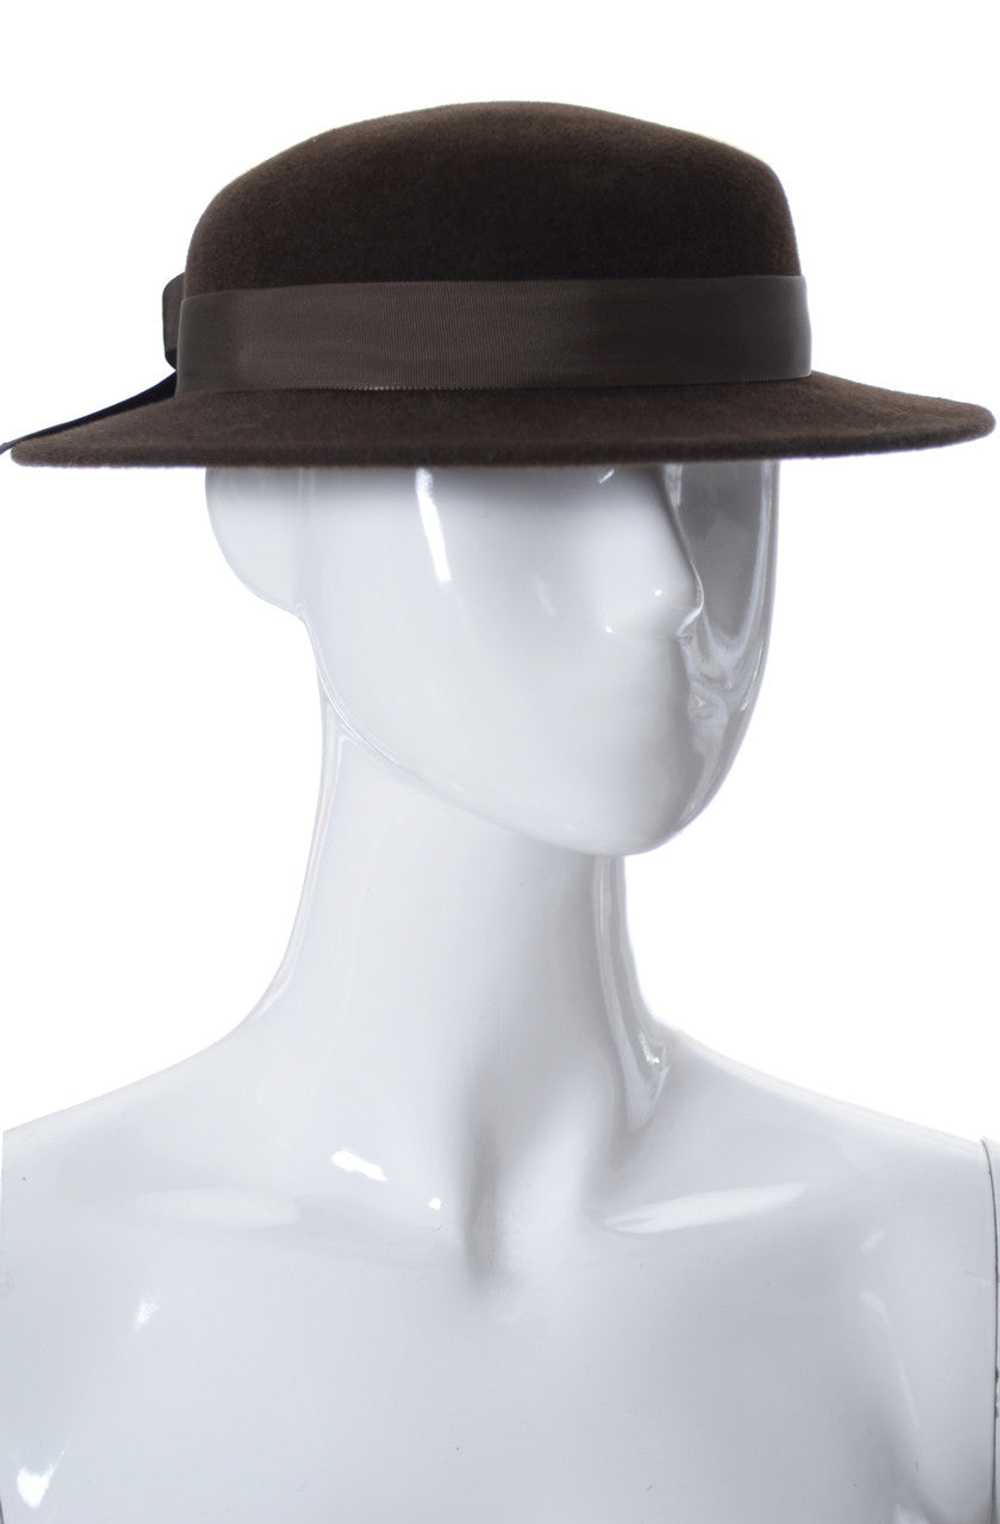 Frank Olive I Magnin Vintage Brown Wool Felt Hat - image 3